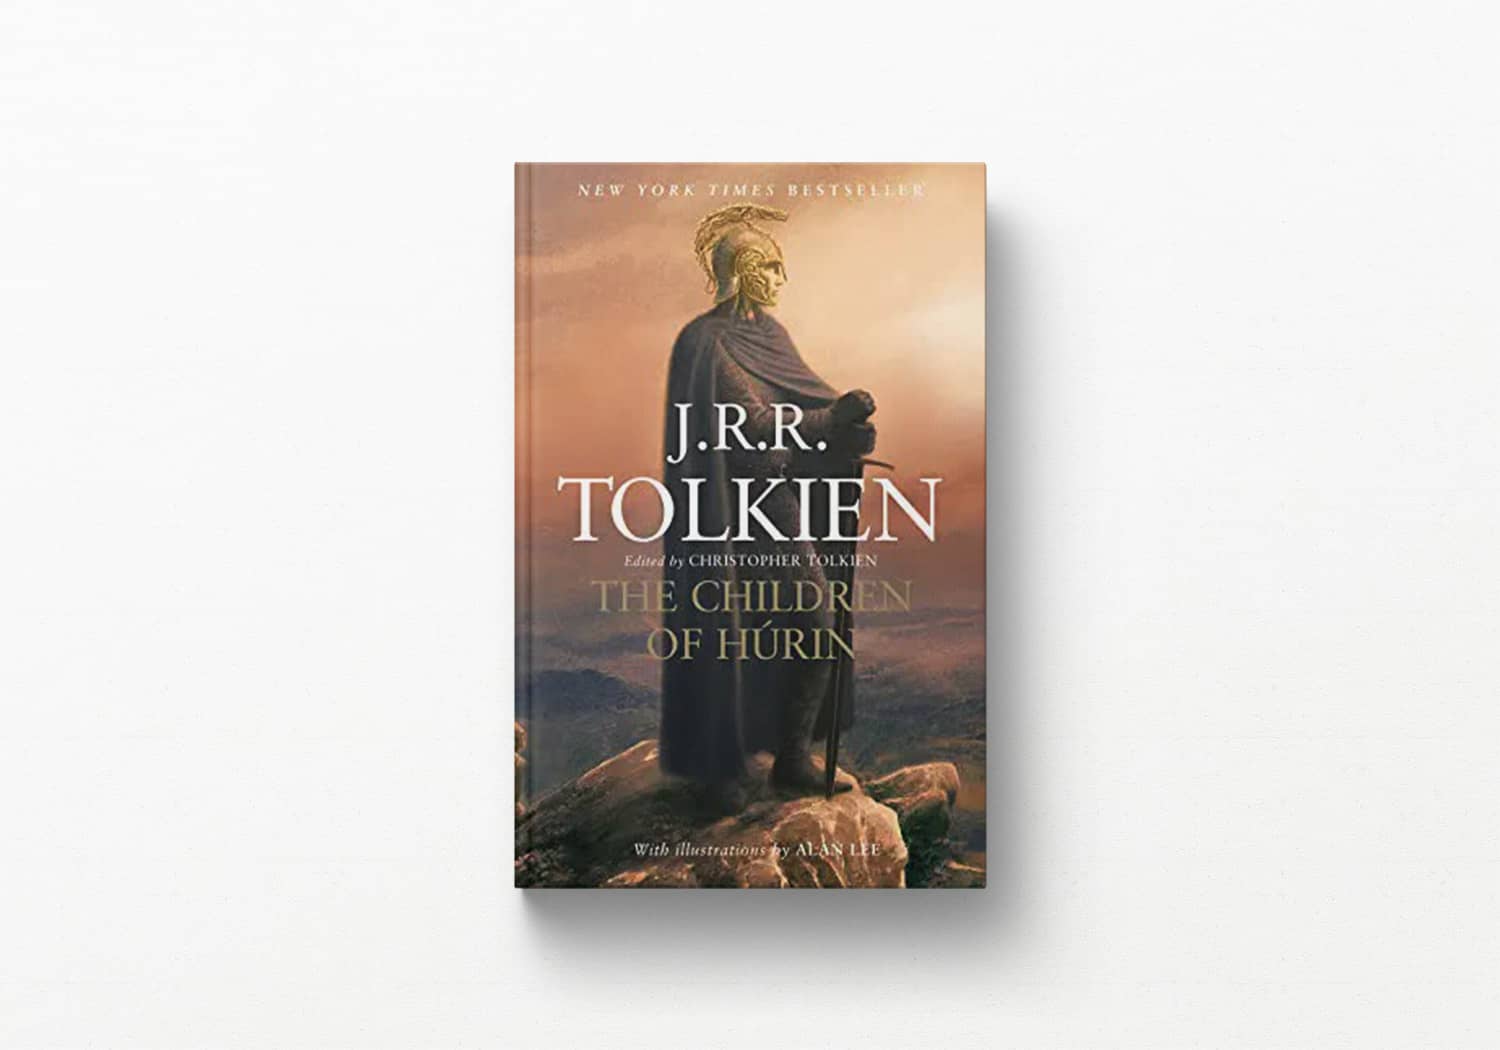 The Children of Húrin by J.R.R. Tolkien